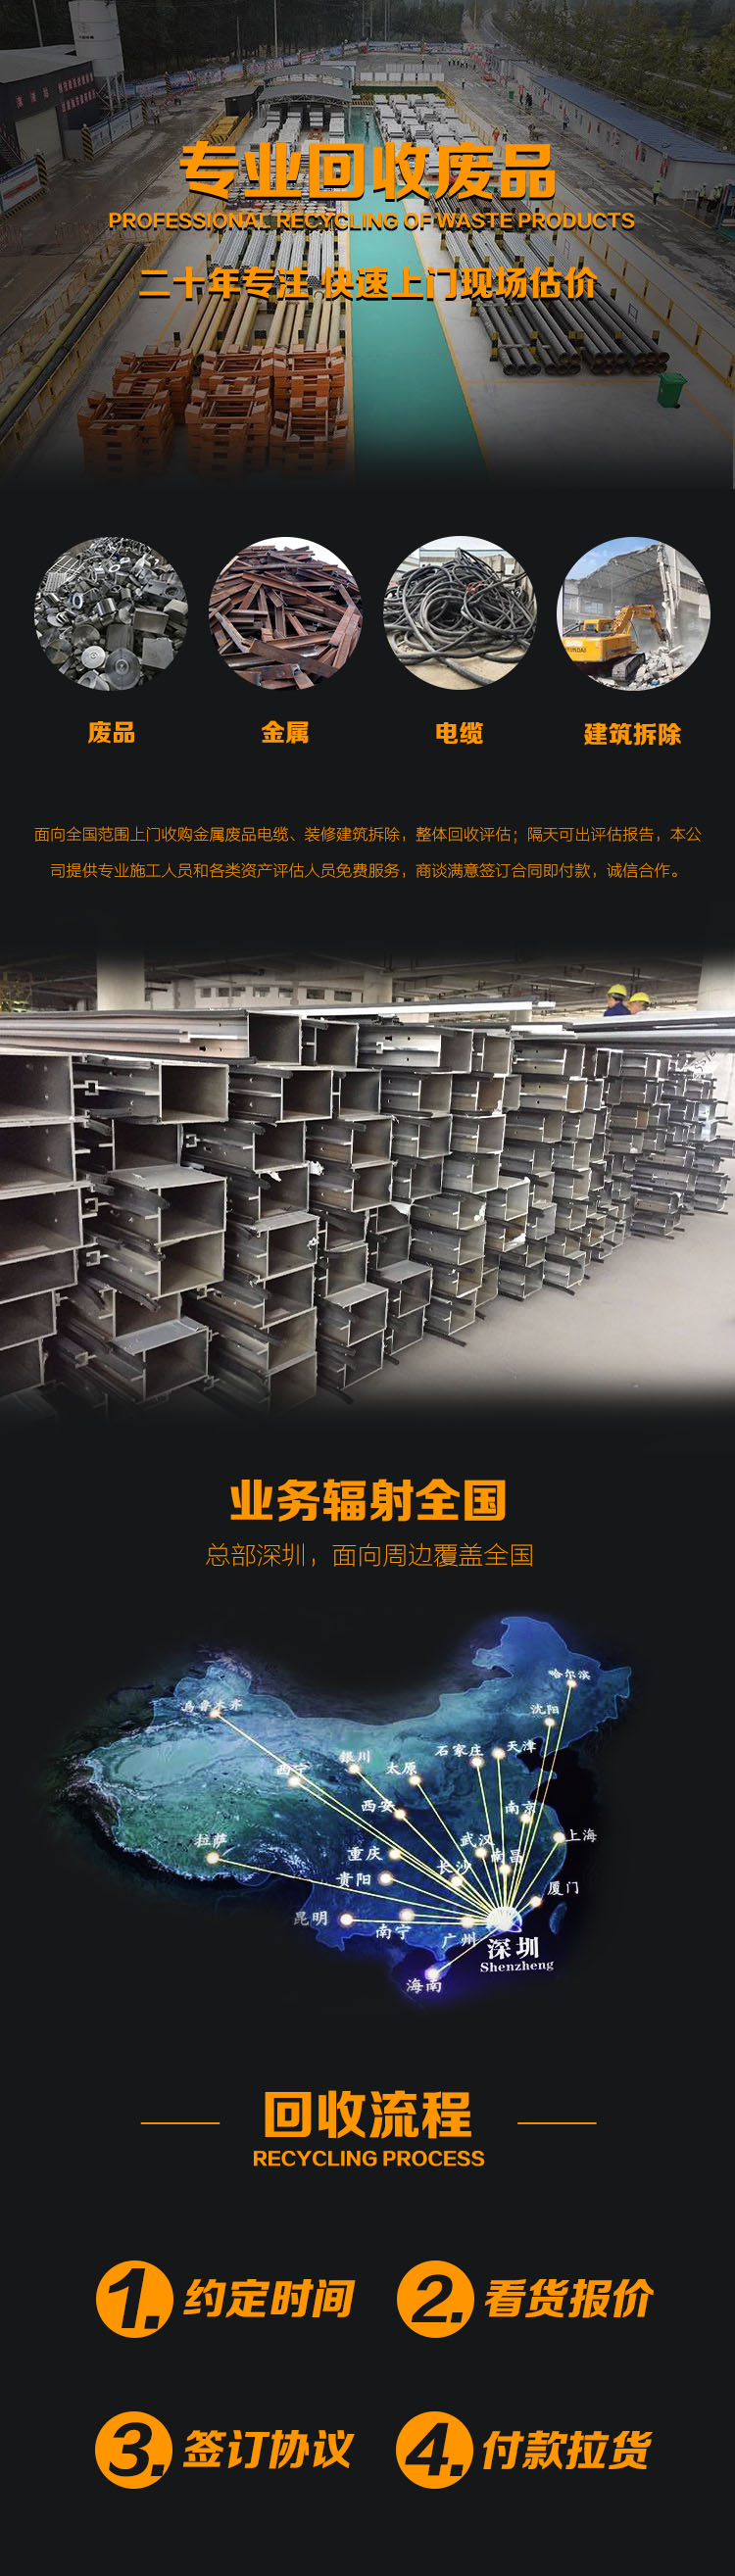 深圳废电缆线回收 旧电缆线回收拆除